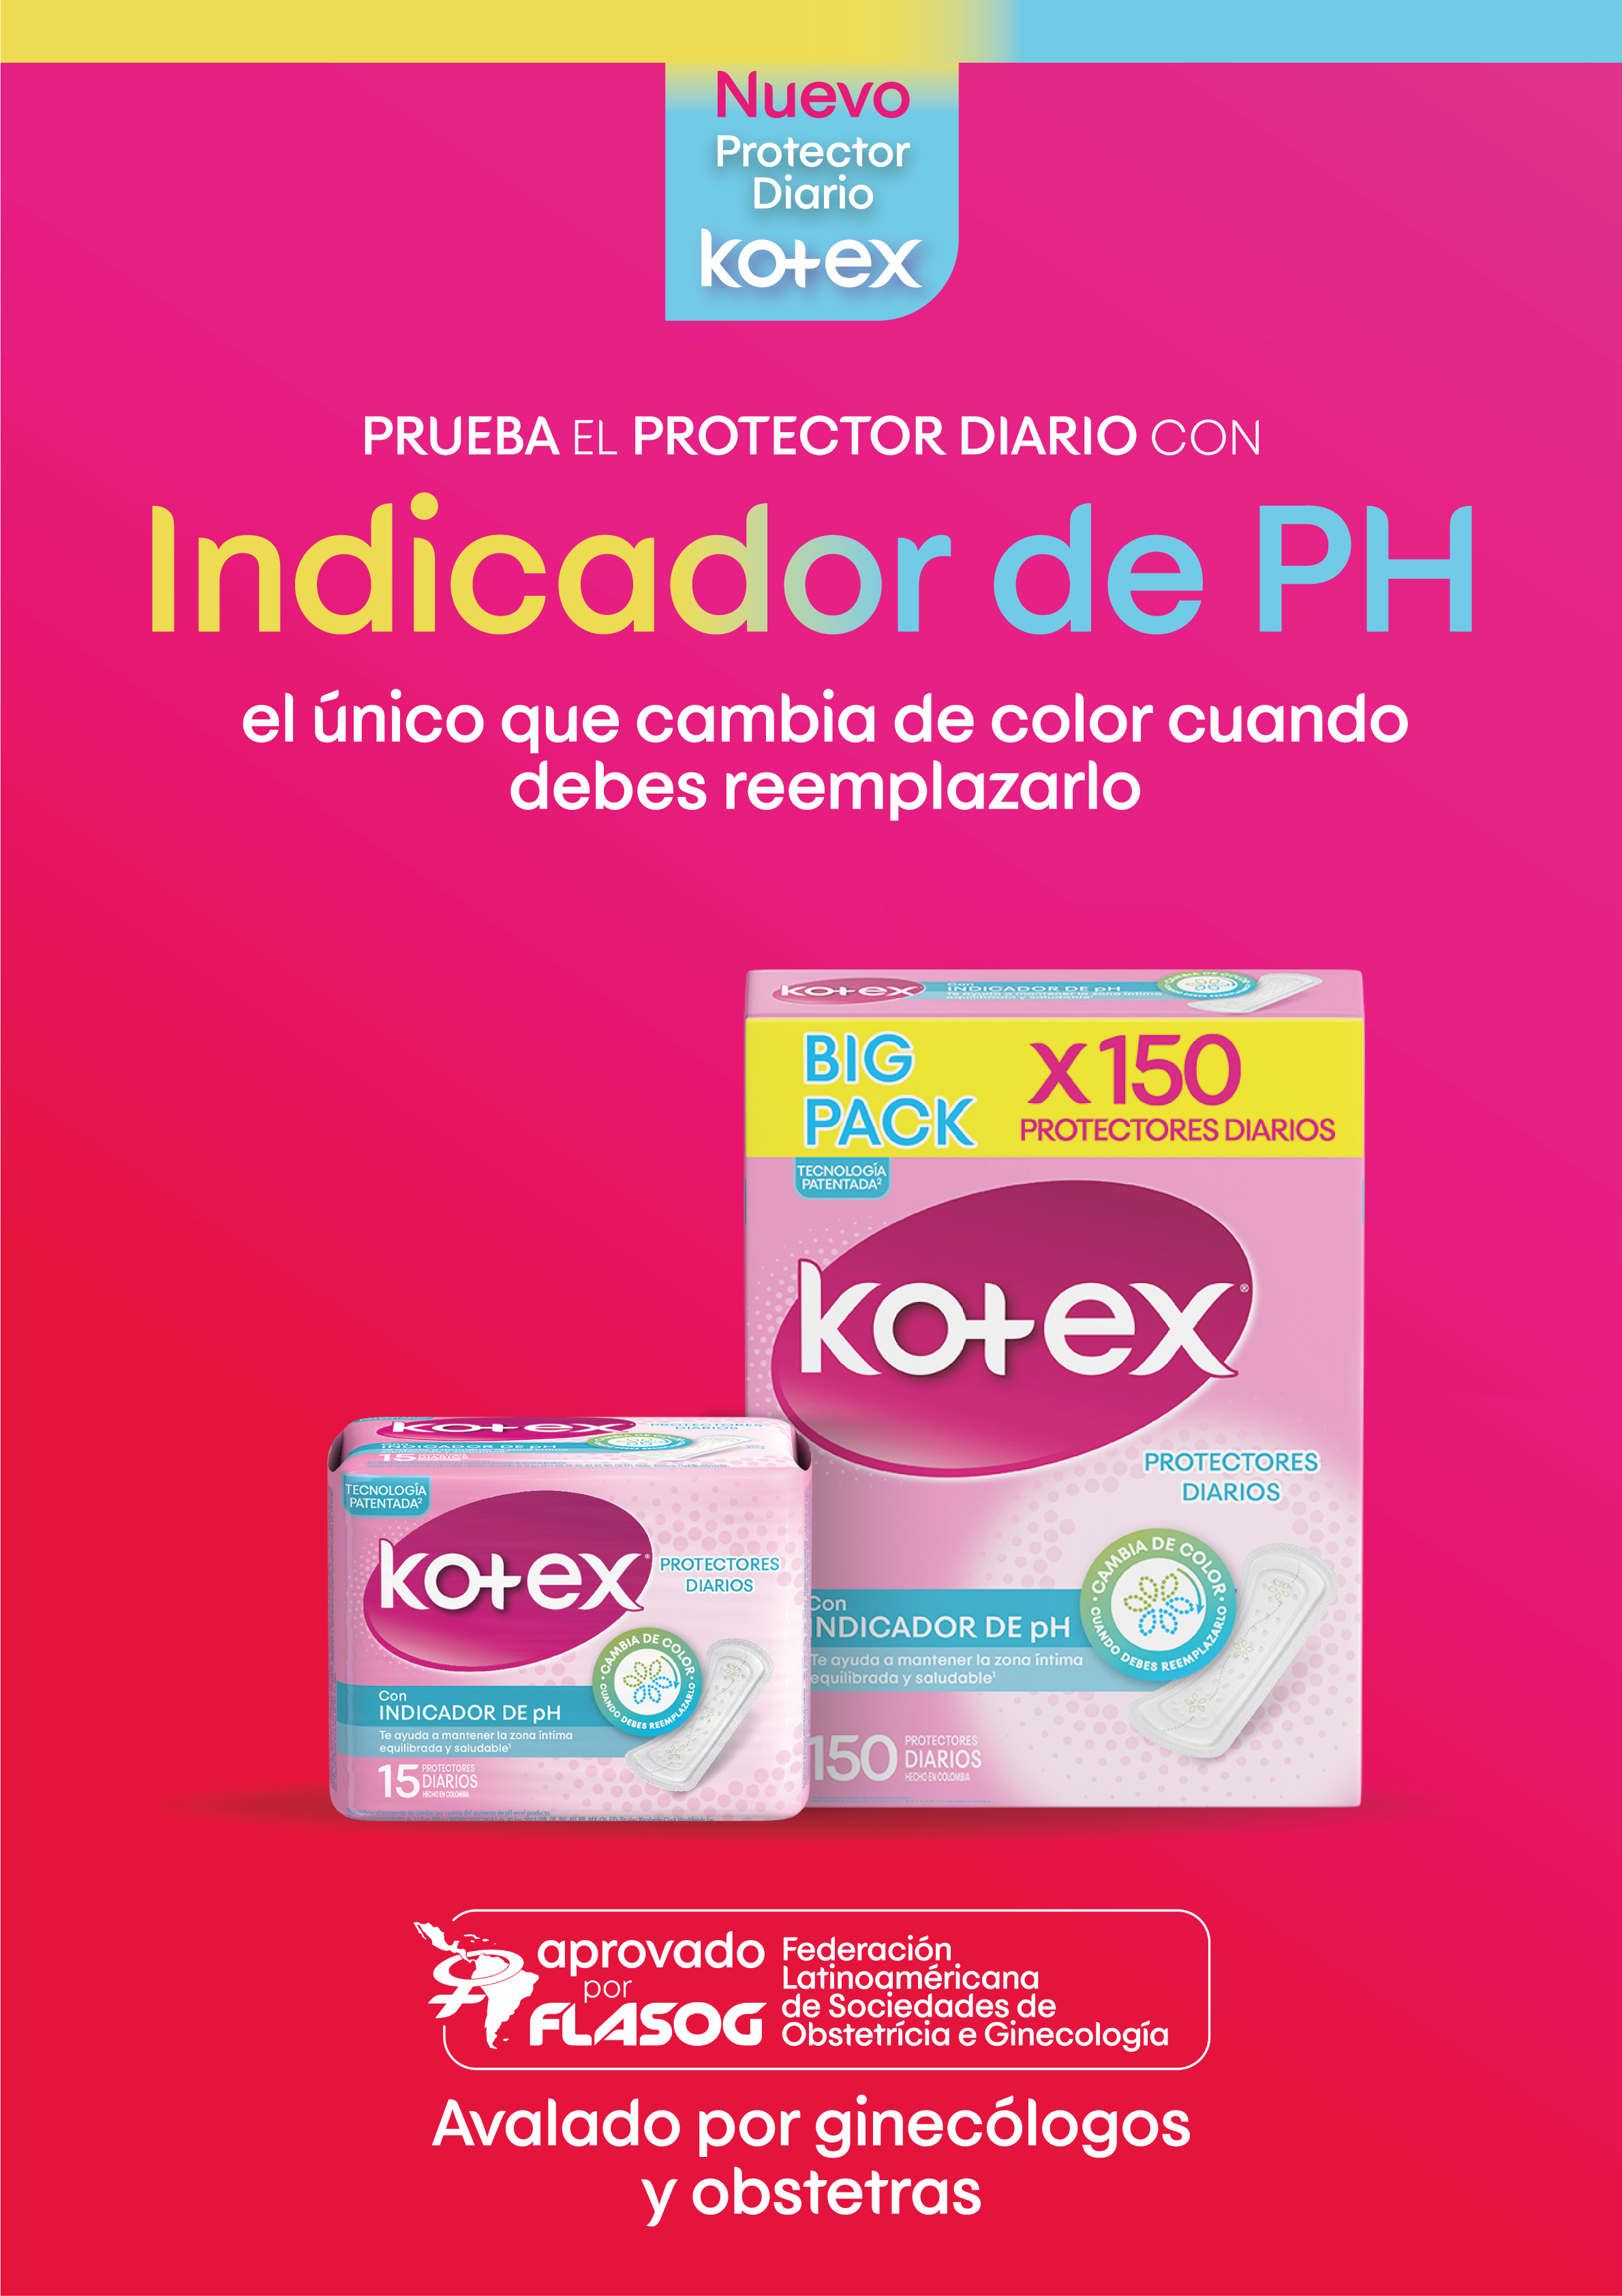 Kotex lanza en Perú el primer protector diario que cambia de color según el indicador de Ph